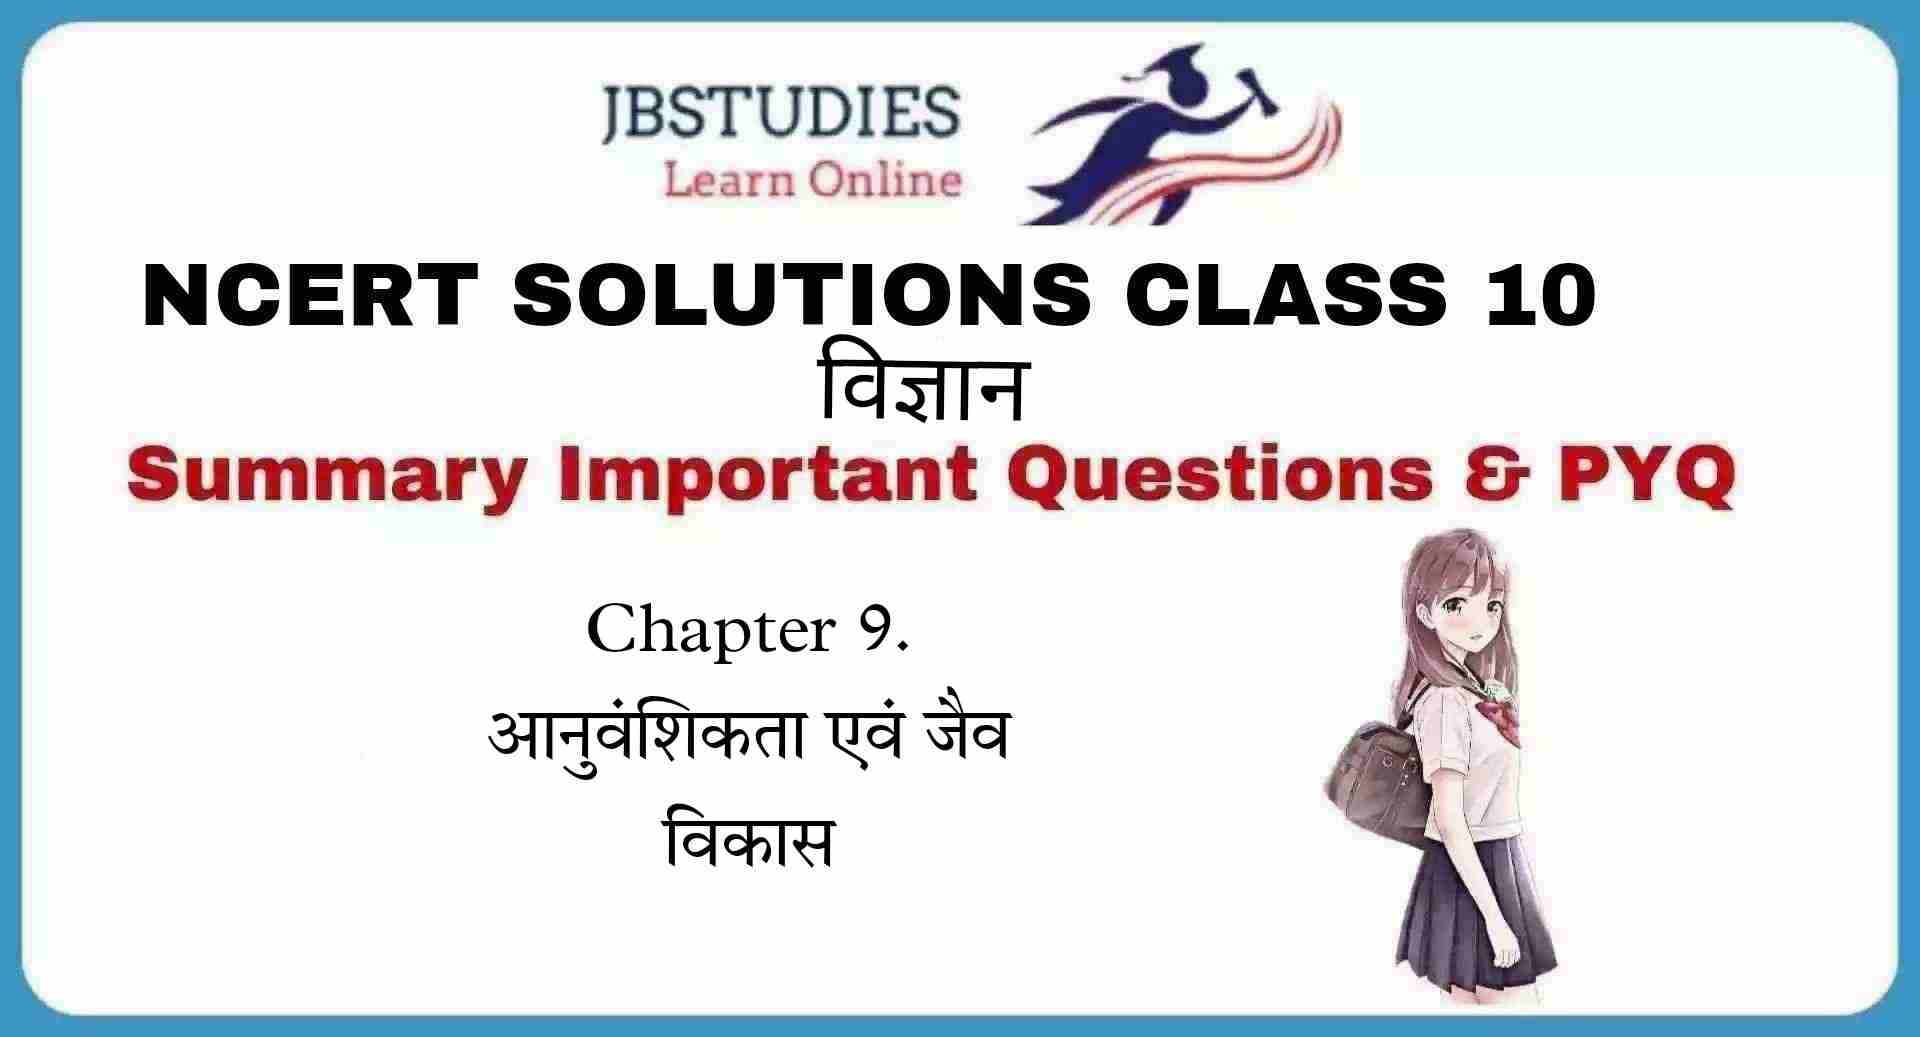 Solutions Class 10 विज्ञान Chapter-9 (अनुवांशिकता एवं जैव विकास)